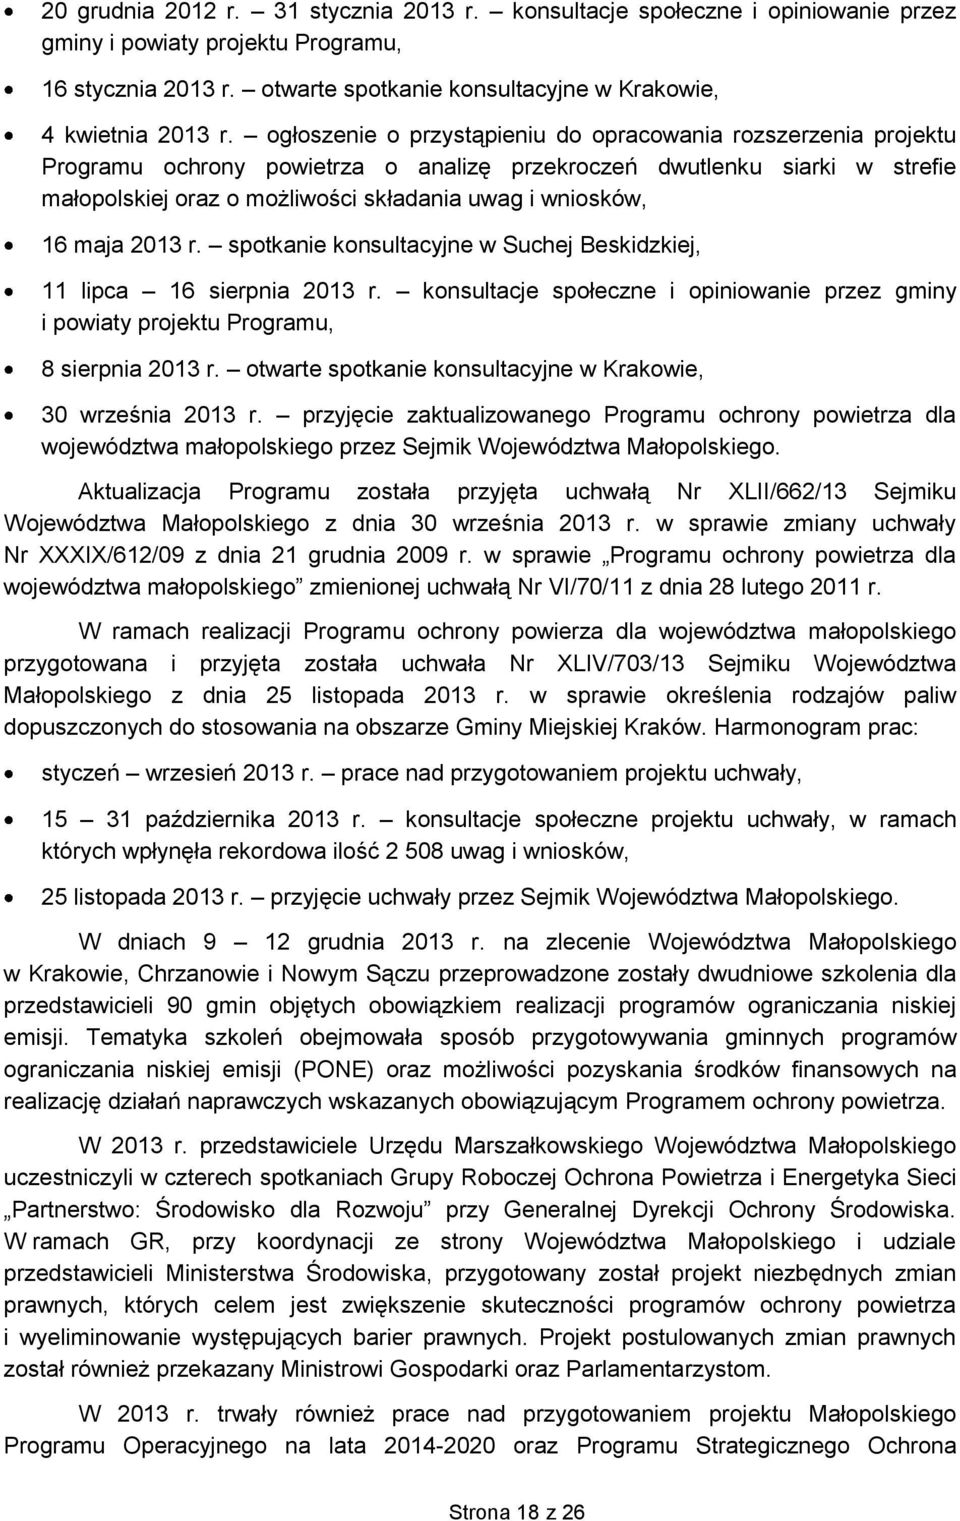 16 maja 2013 r. spotkanie konsultacyjne w Suchej Beskidzkiej, 11 lipca 16 sierpnia 2013 r. konsultacje społeczne i opiniowanie przez gminy i powiaty projektu Programu, 8 sierpnia 2013 r.